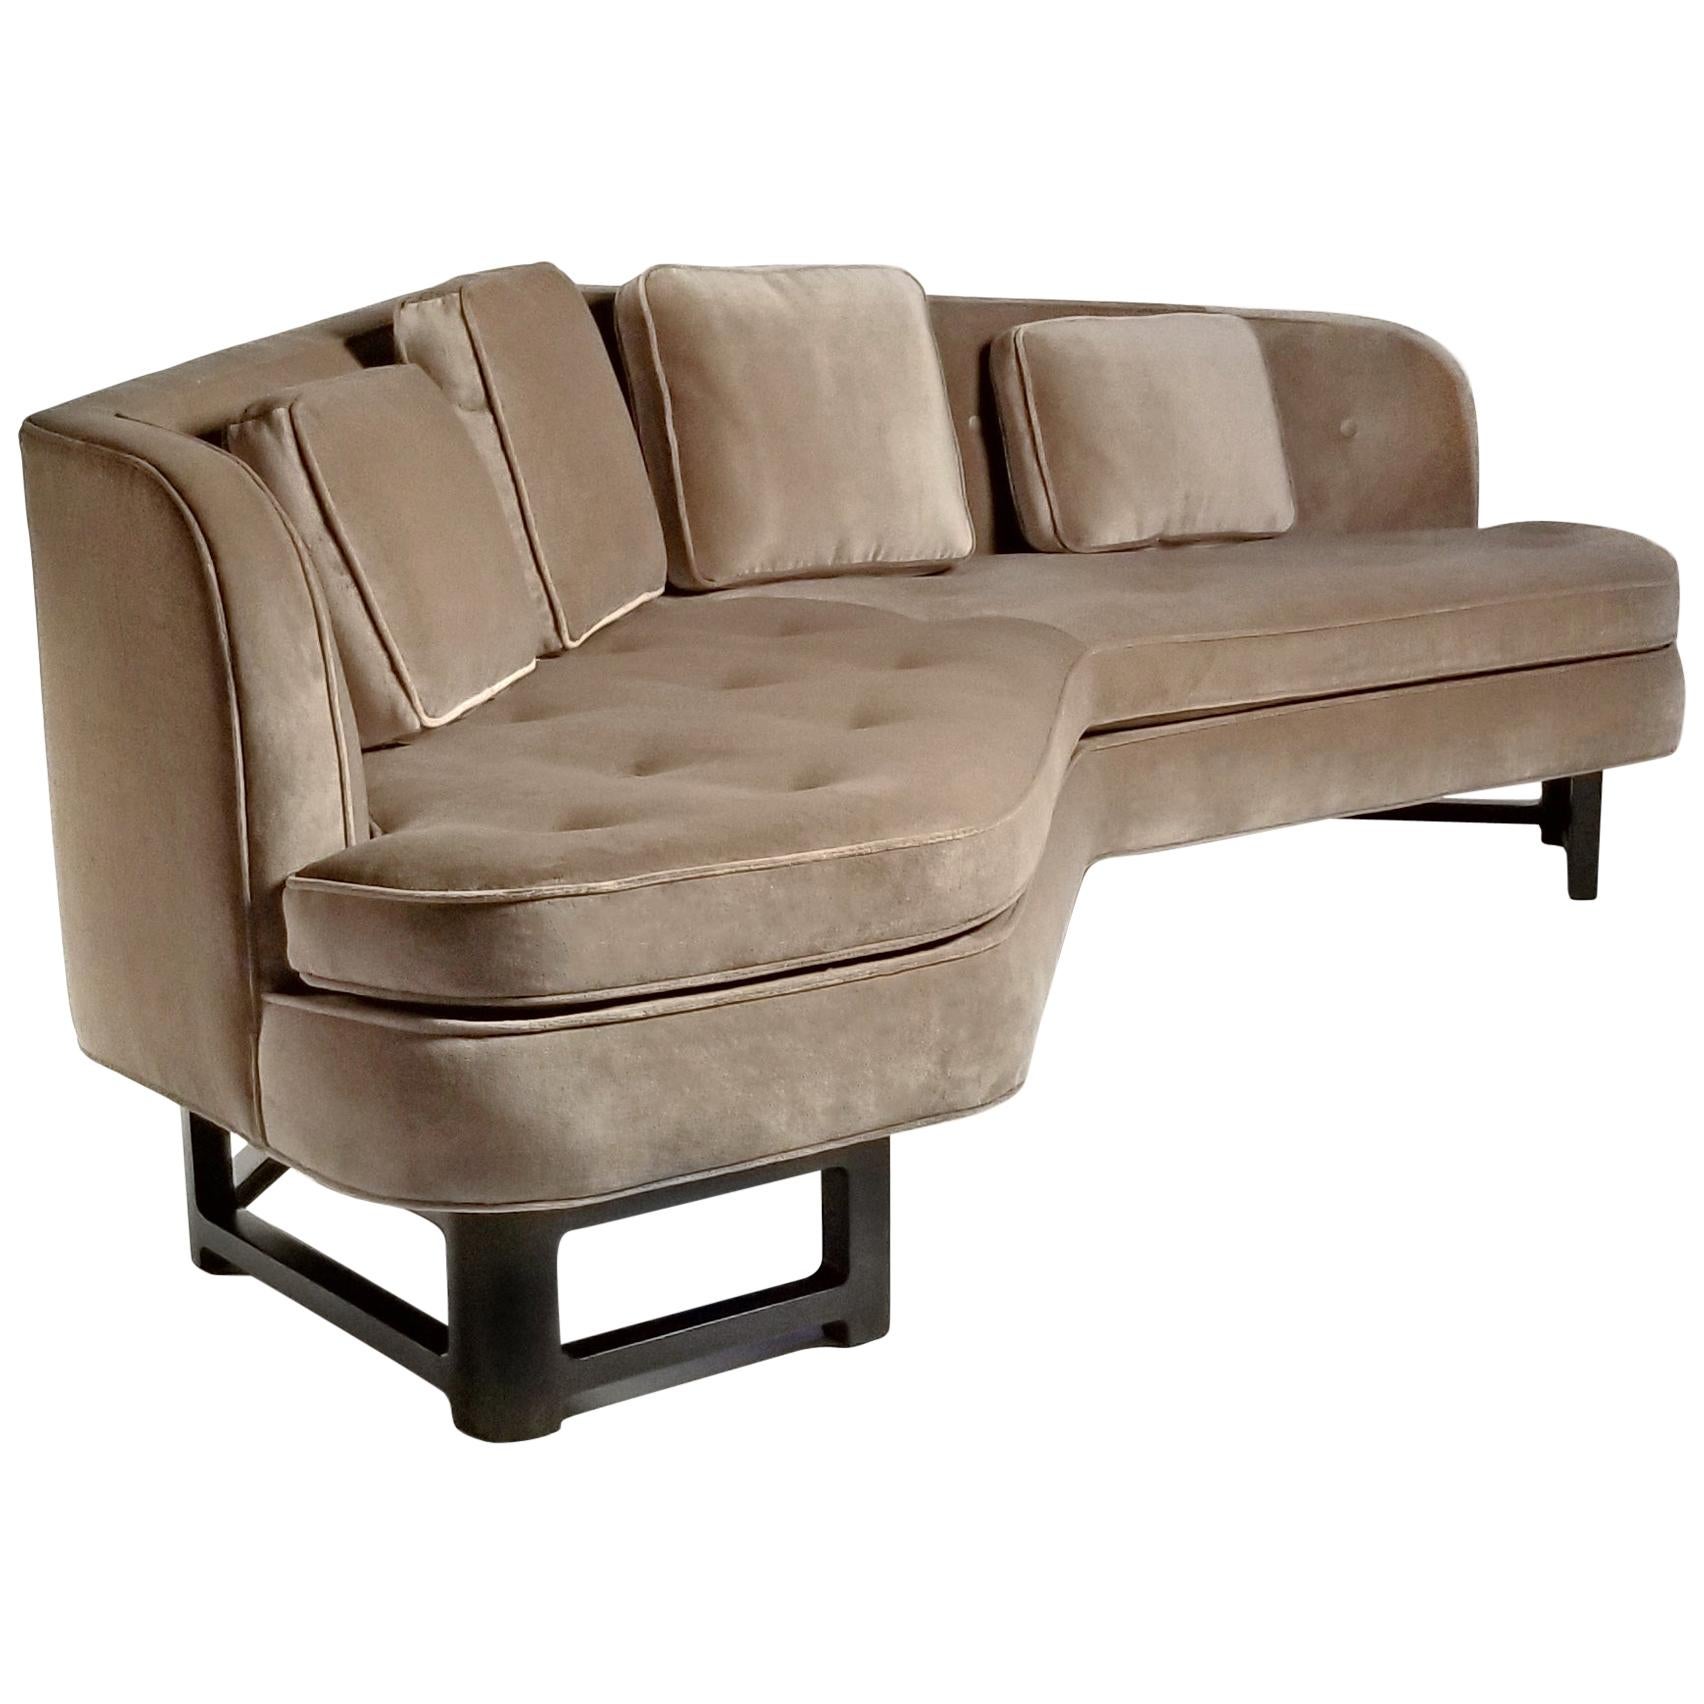 Sofa Model 6329A Designed Edward Wormley for Dunbar